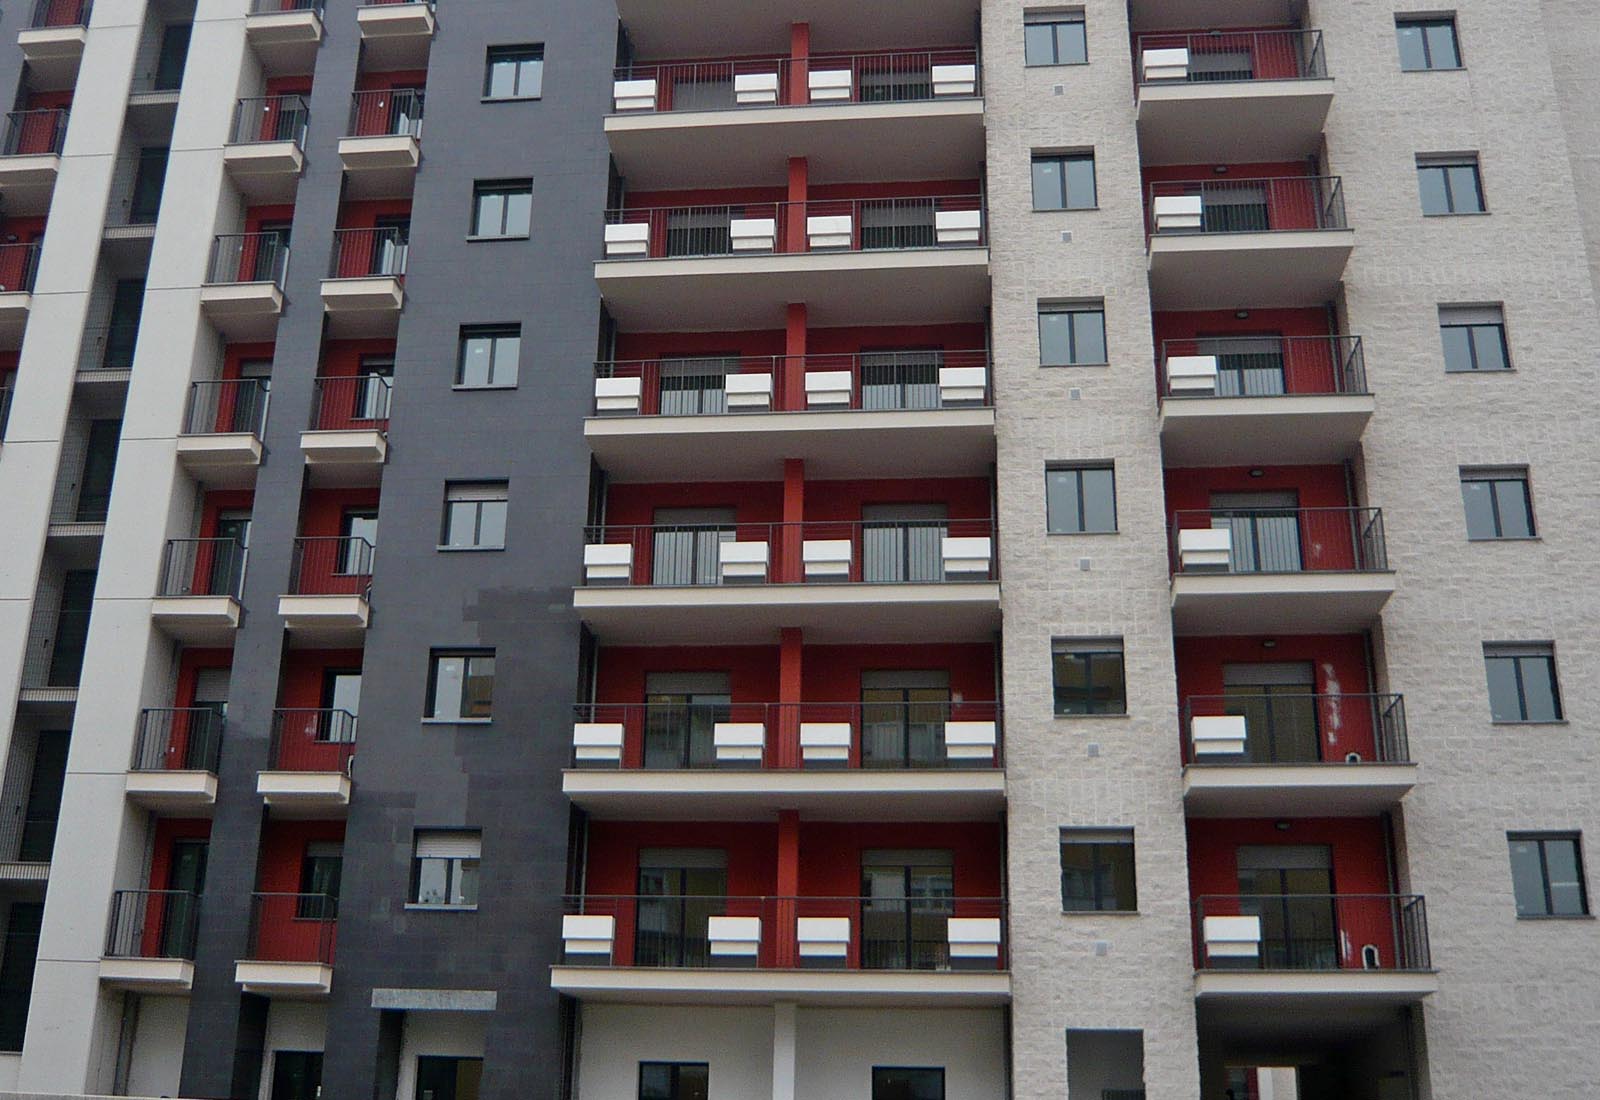 Residential ensemble Grazioli in Milan - View